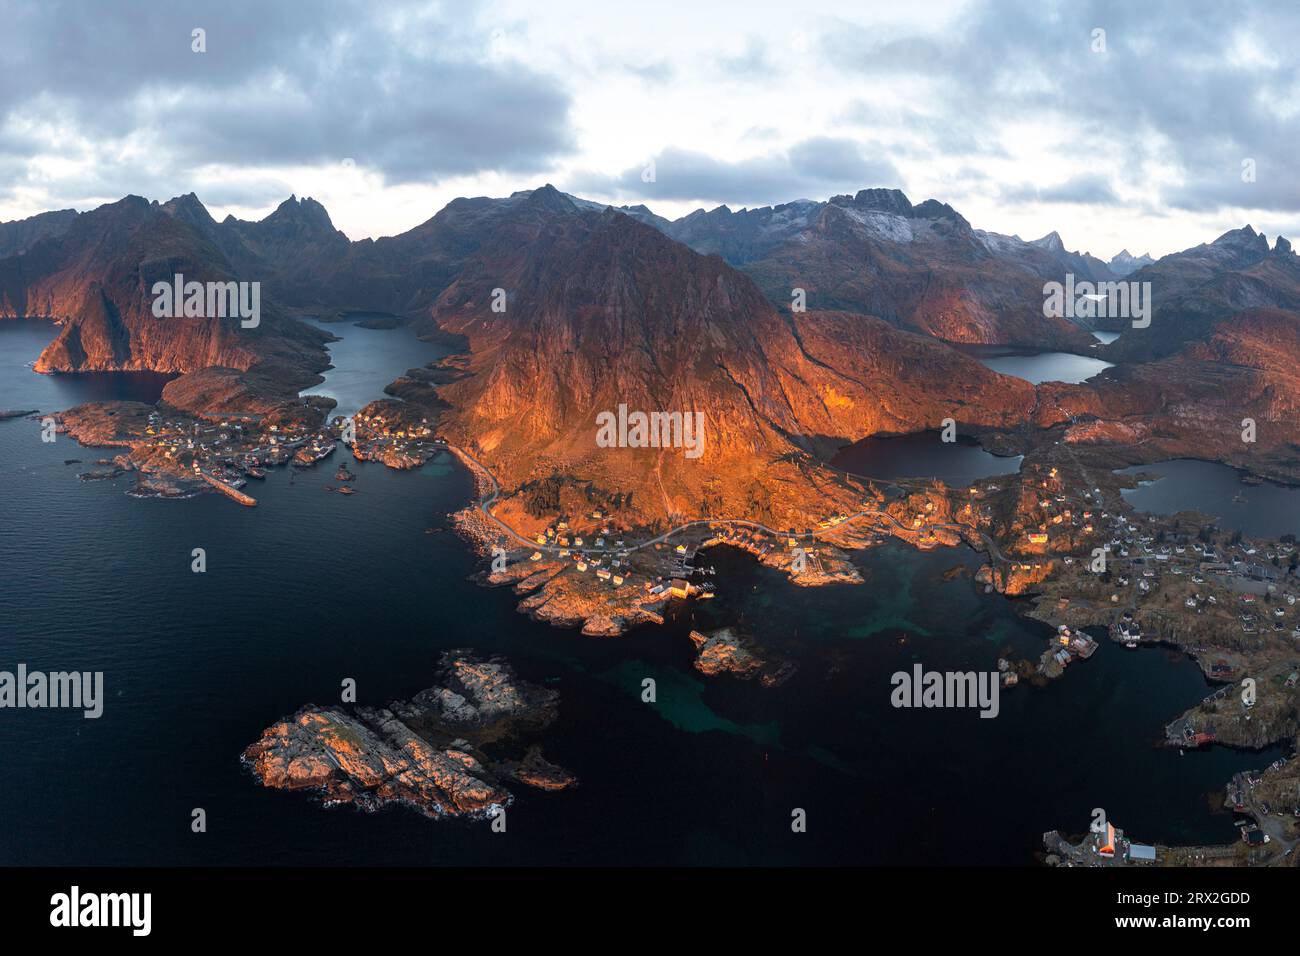 Vista aerea panoramica delle montagne che circondano i villaggi costieri di Tind e A i Lofoten, le isole Lofoten, Nordland, Norvegia, Scandinavia, Europa Foto Stock